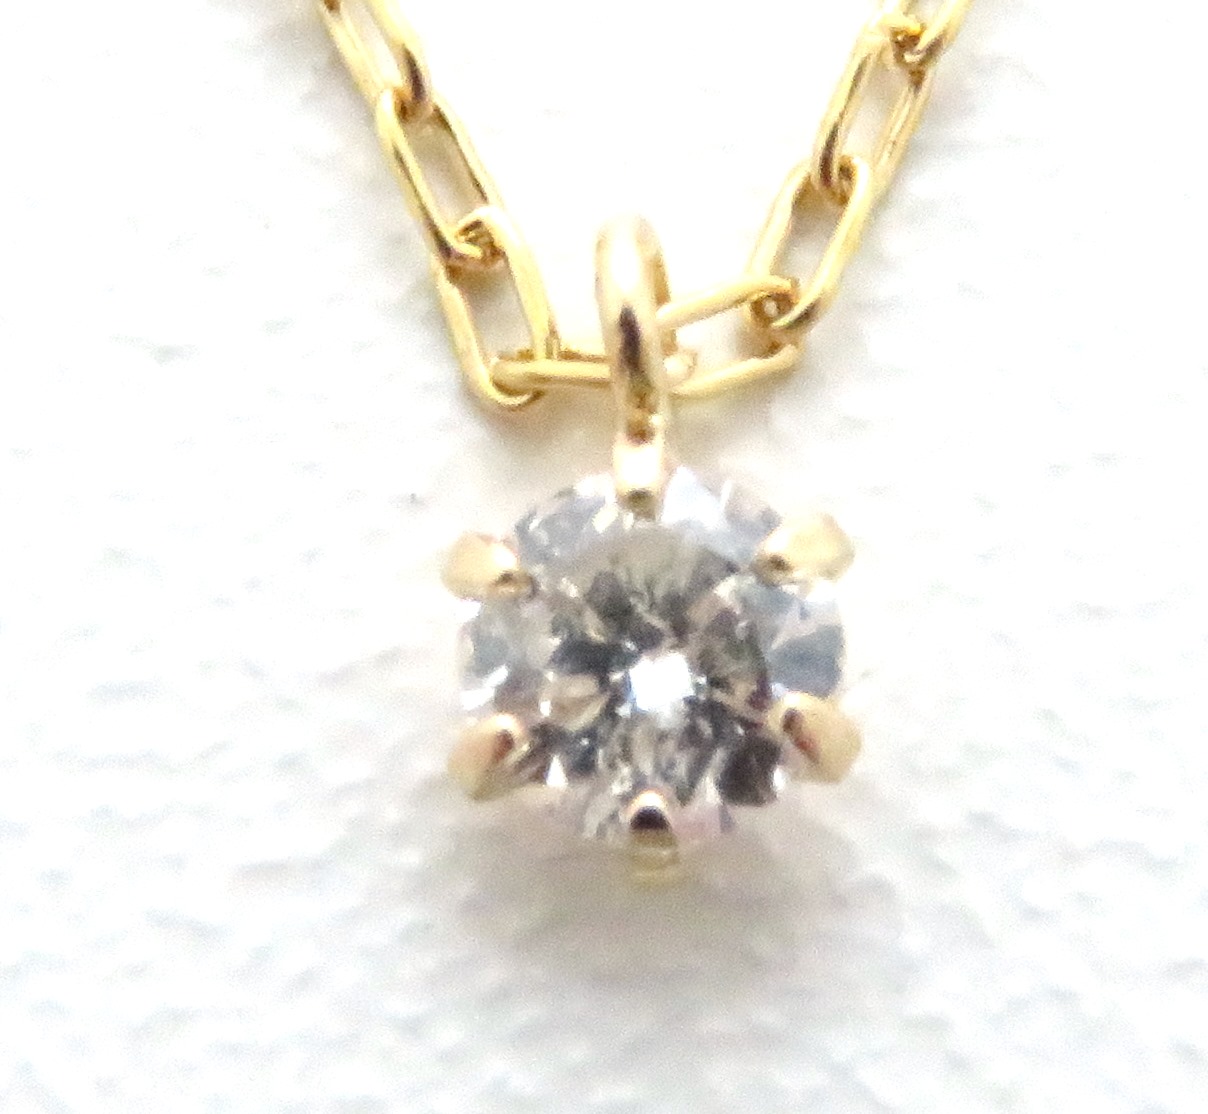 ノンブランドジュエリー ダイヤモンドネックレス K18イエローゴールド ダイヤモンド0.06ct 全体重量約1.1g 【205】 の購入なら